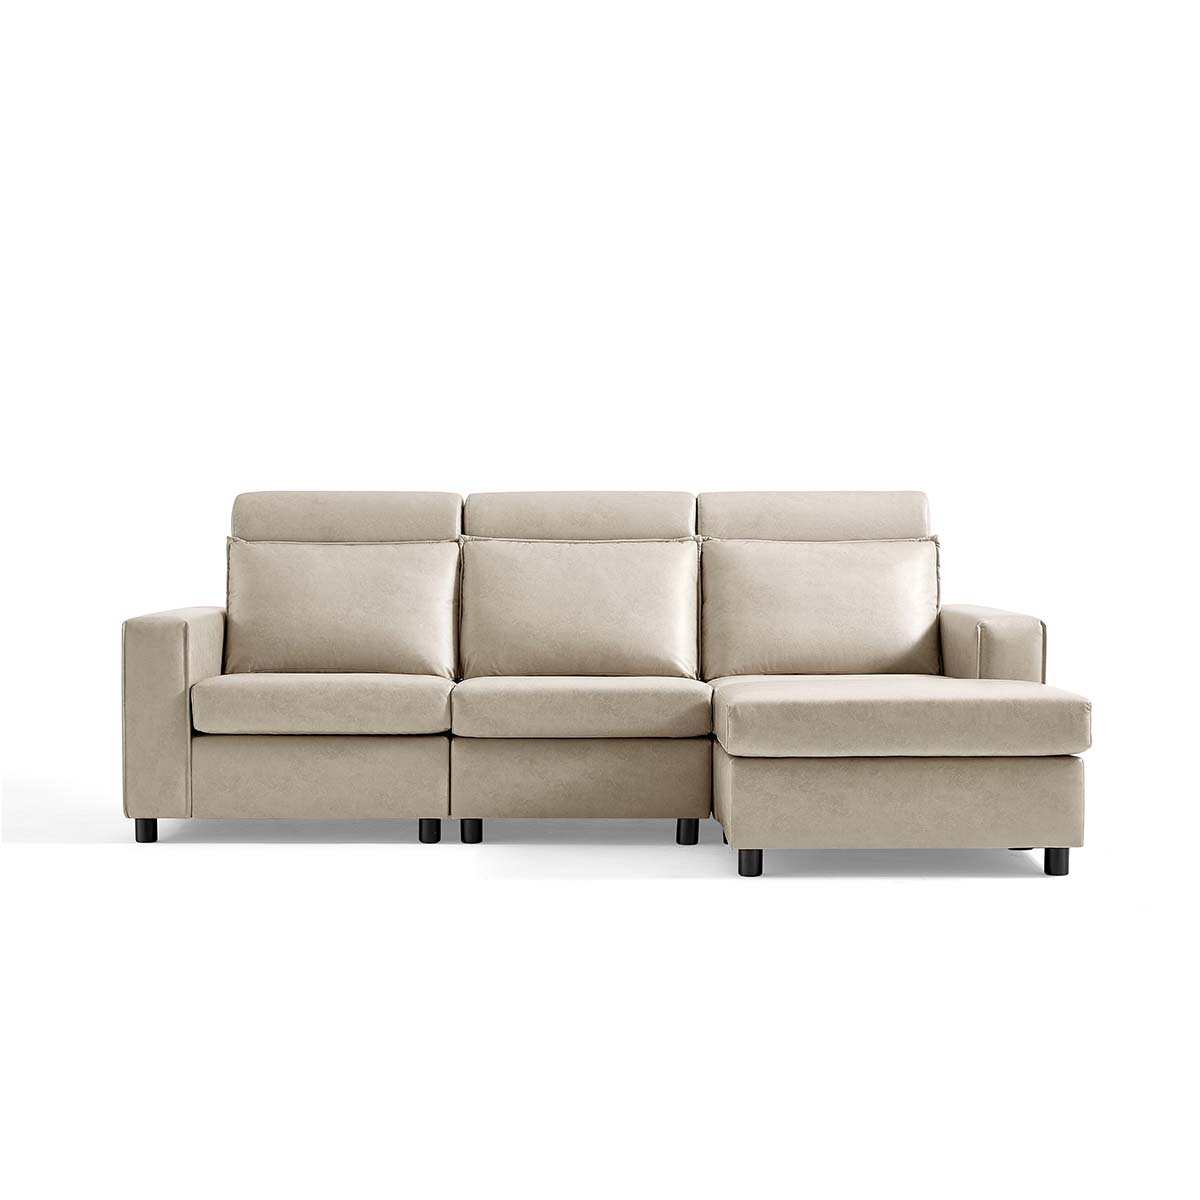 [New] LINSY Kori Sectional Sofa